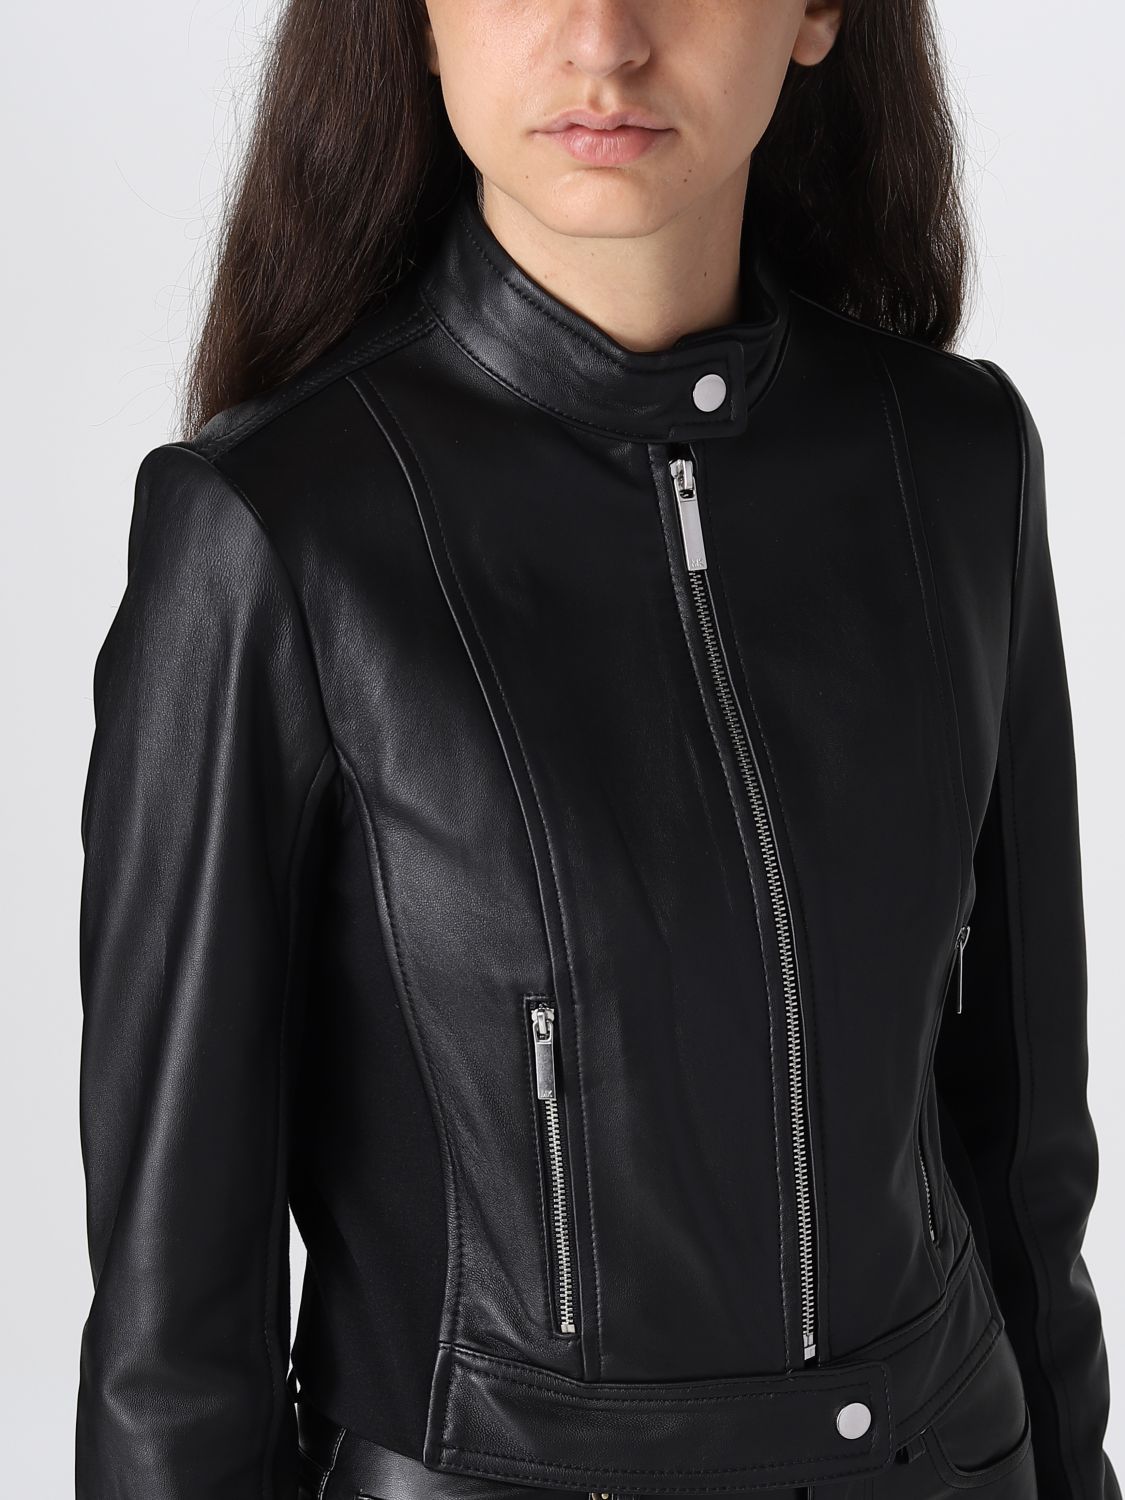 Michael Kors Outlet: jacket for woman - Black | Michael Kors jacket  MB92J0B8RK online on 